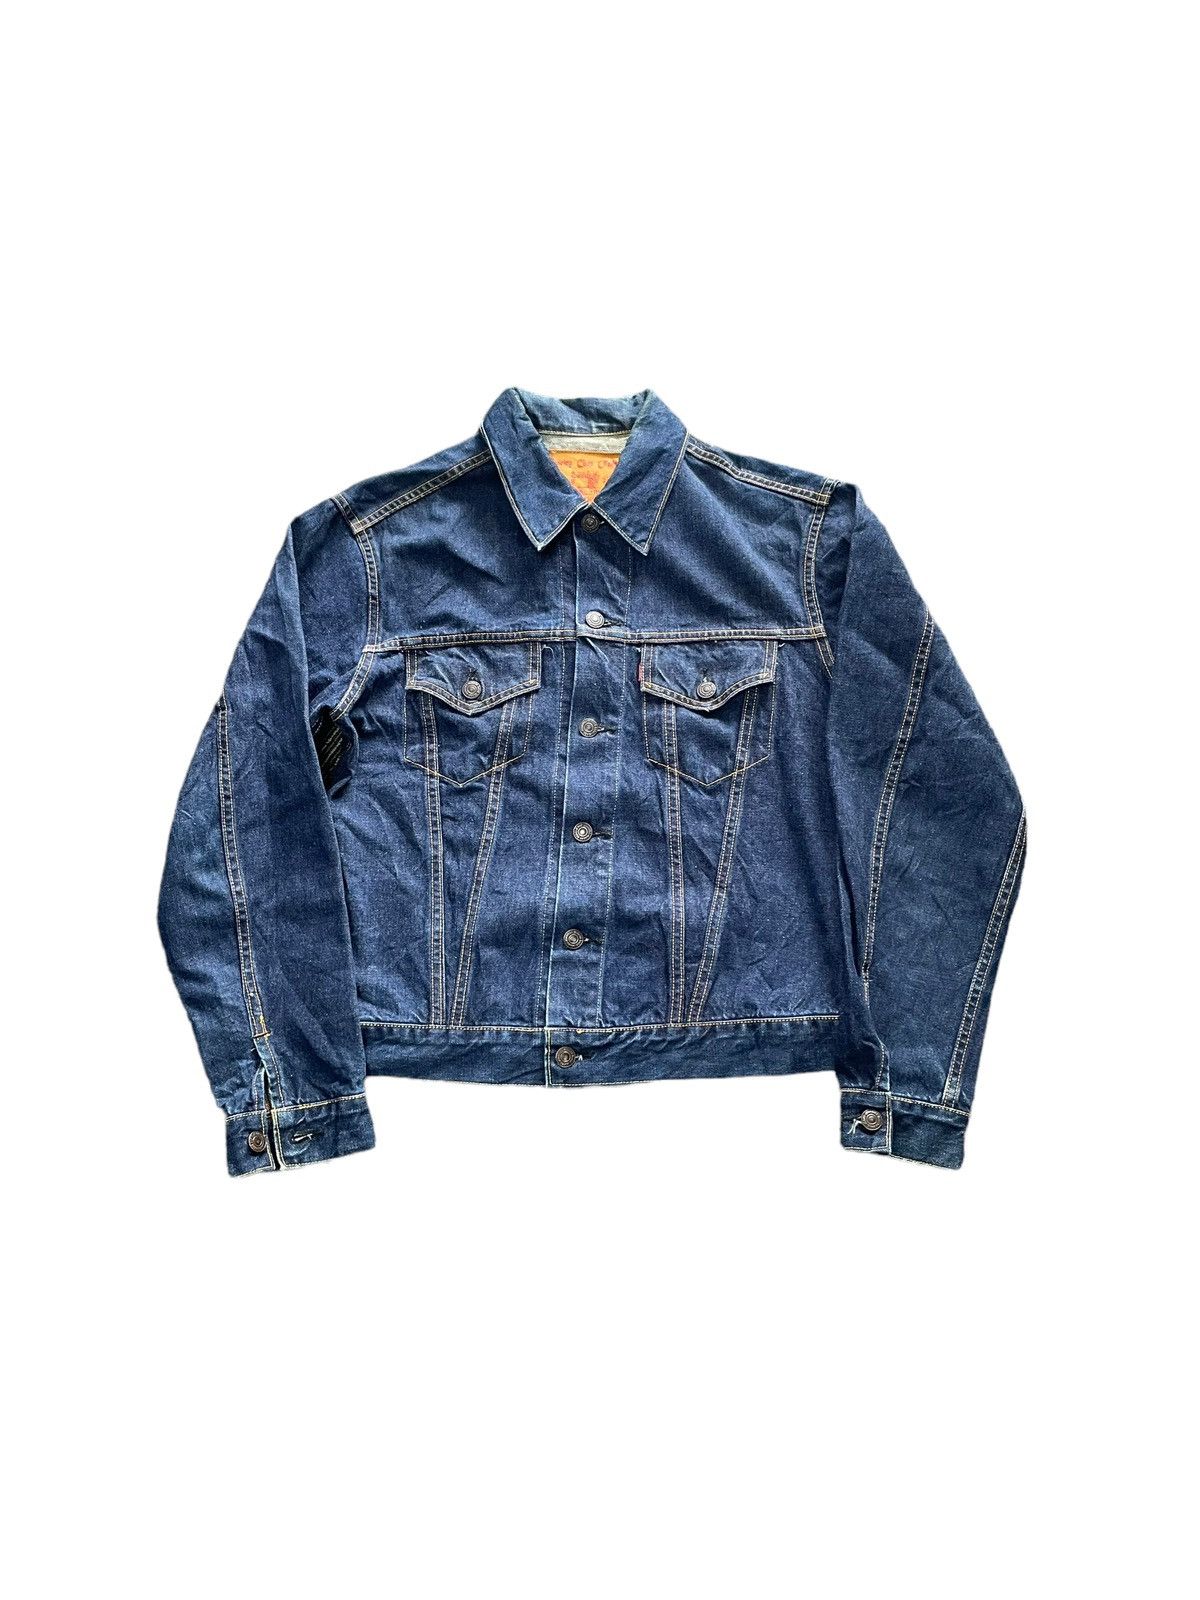 Vintage Vintage Sewing Chop O'Alls Denim Jacket | Grailed